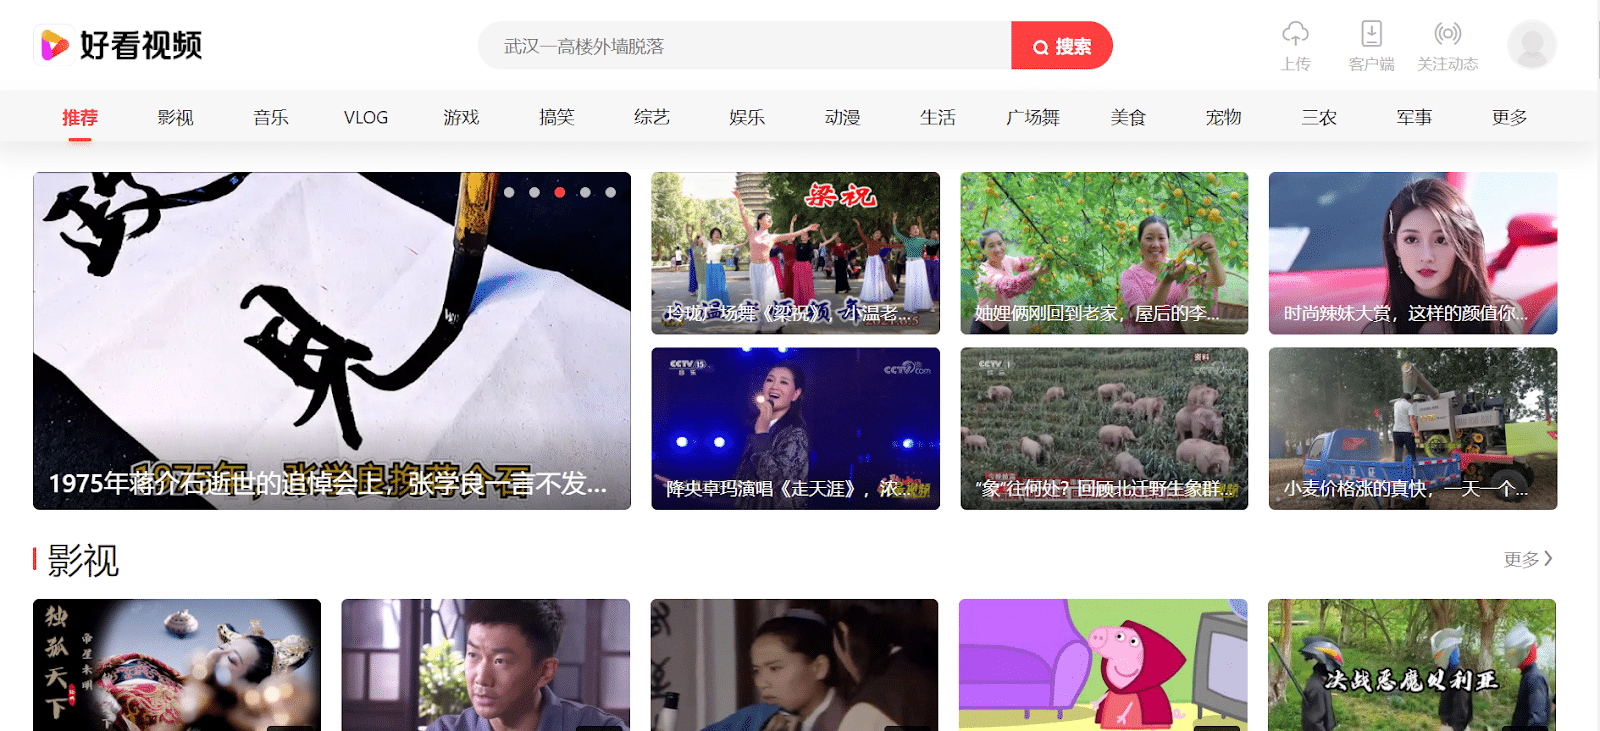 Baidu, China's grootste zoekmachine